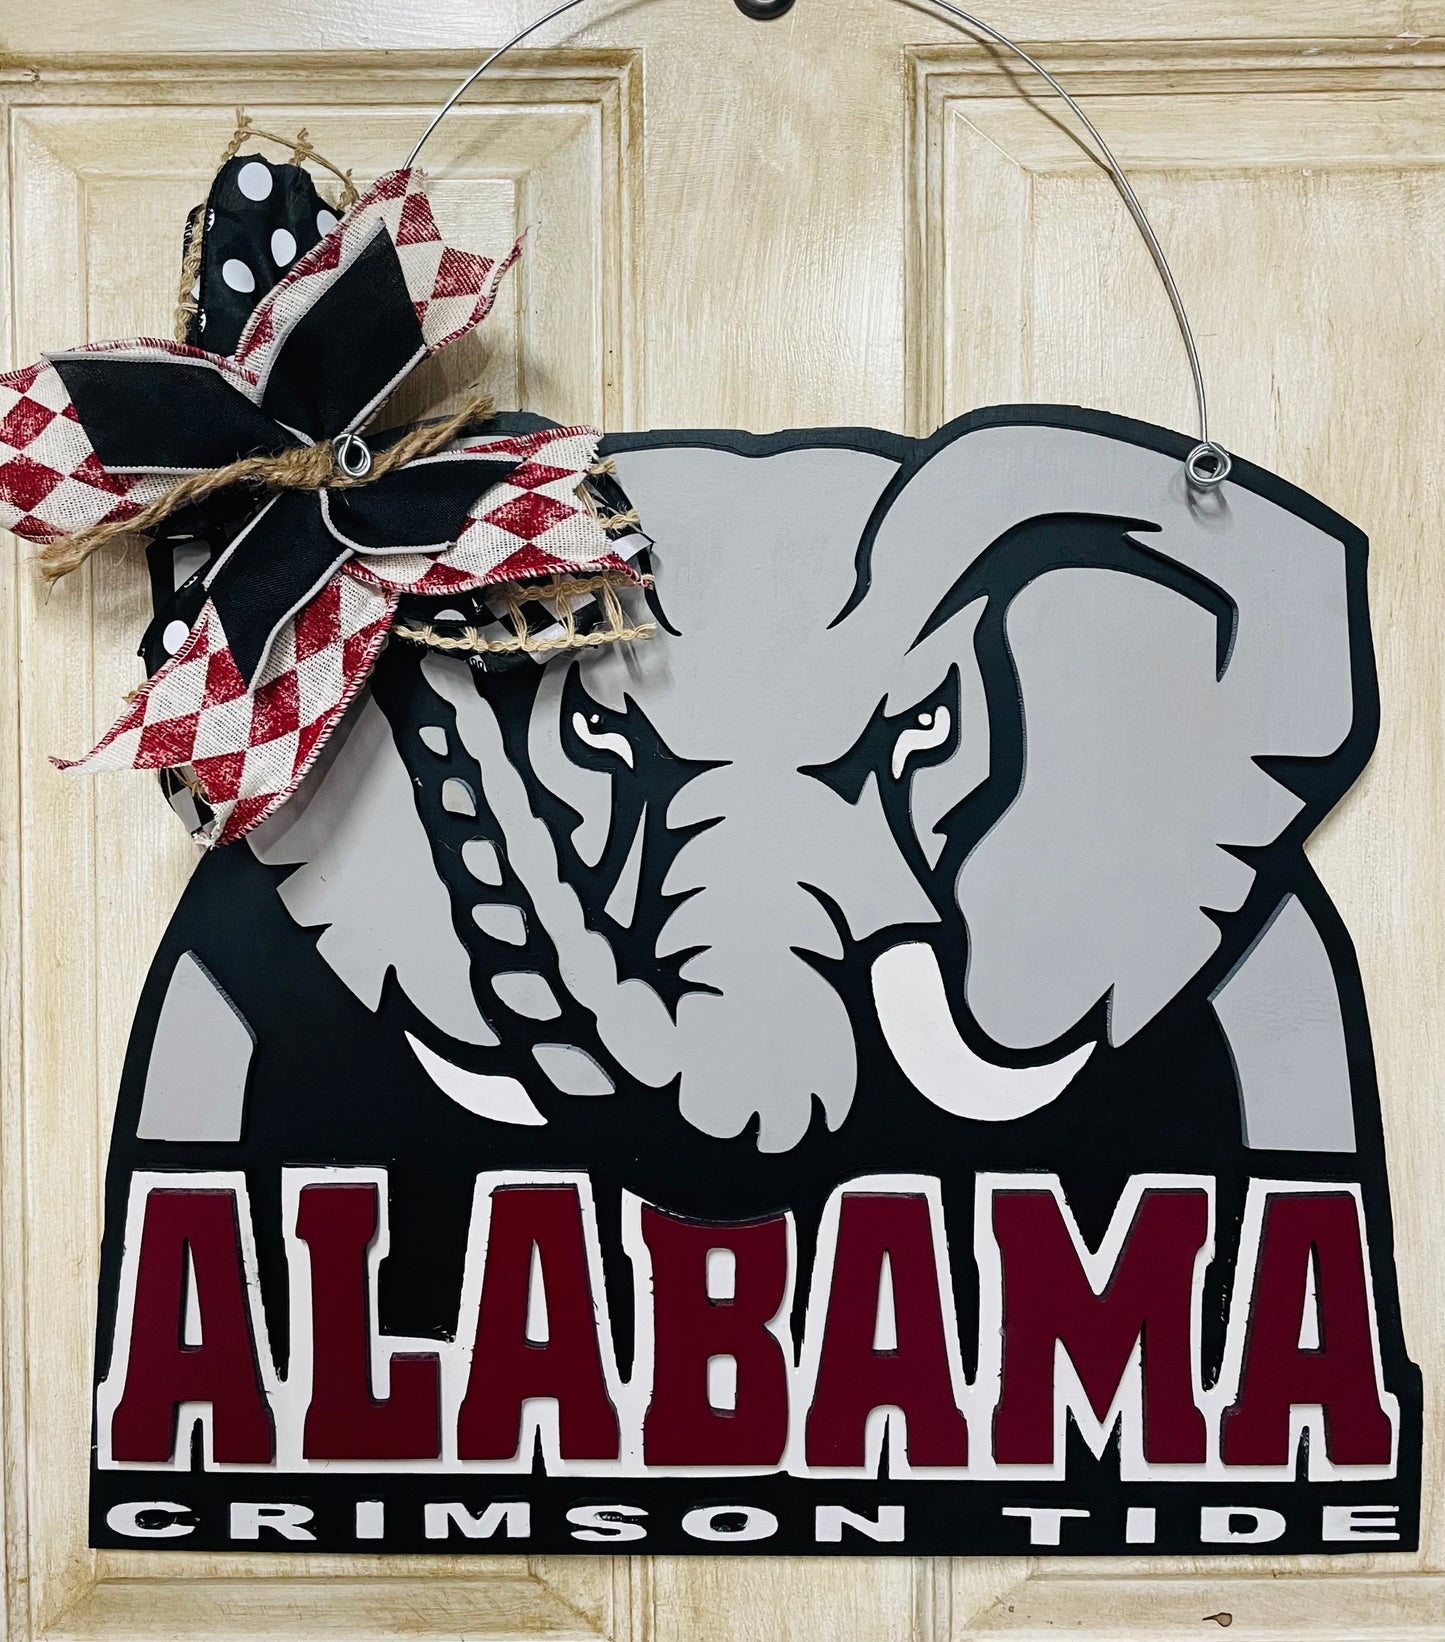 3D University of Alabama door sign